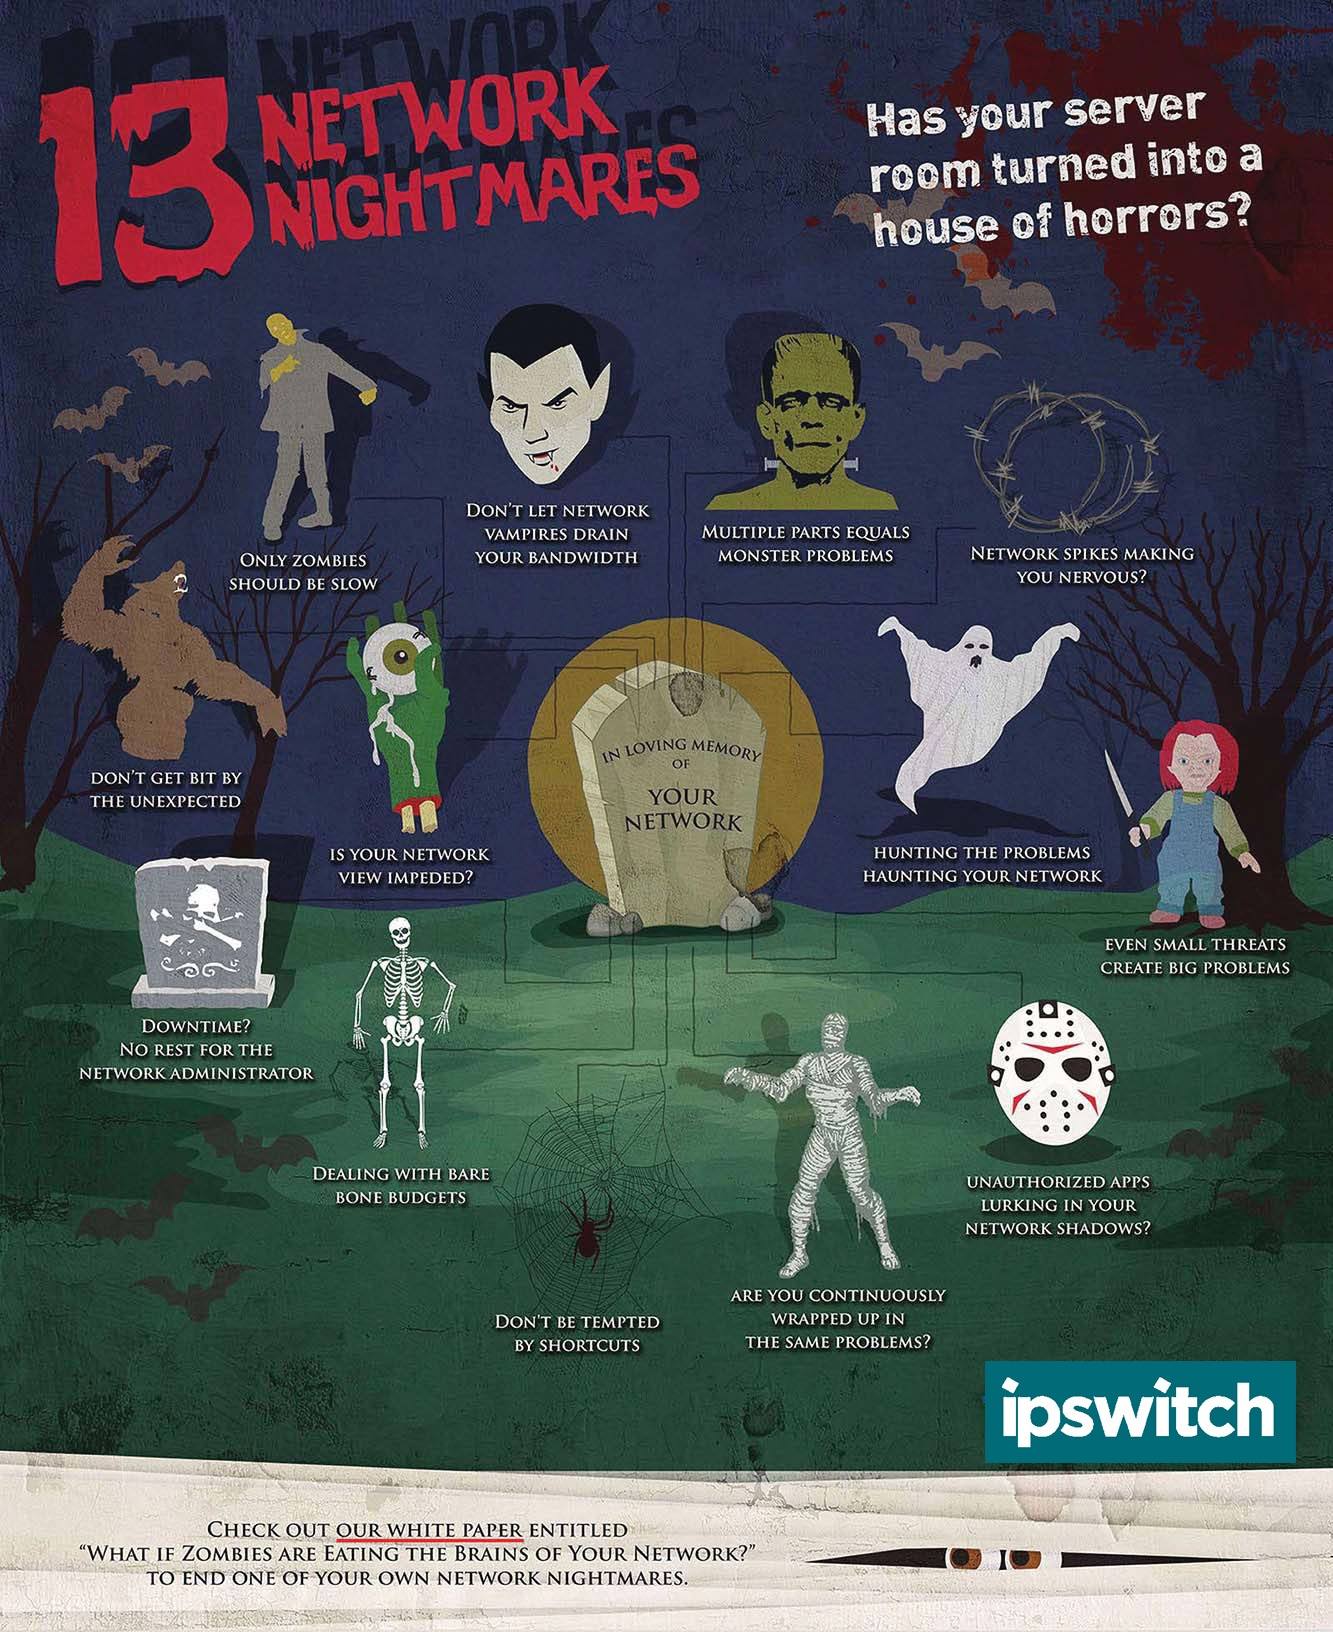 Halloween-Network-Nightmares_Ipswitch-2017.jpg